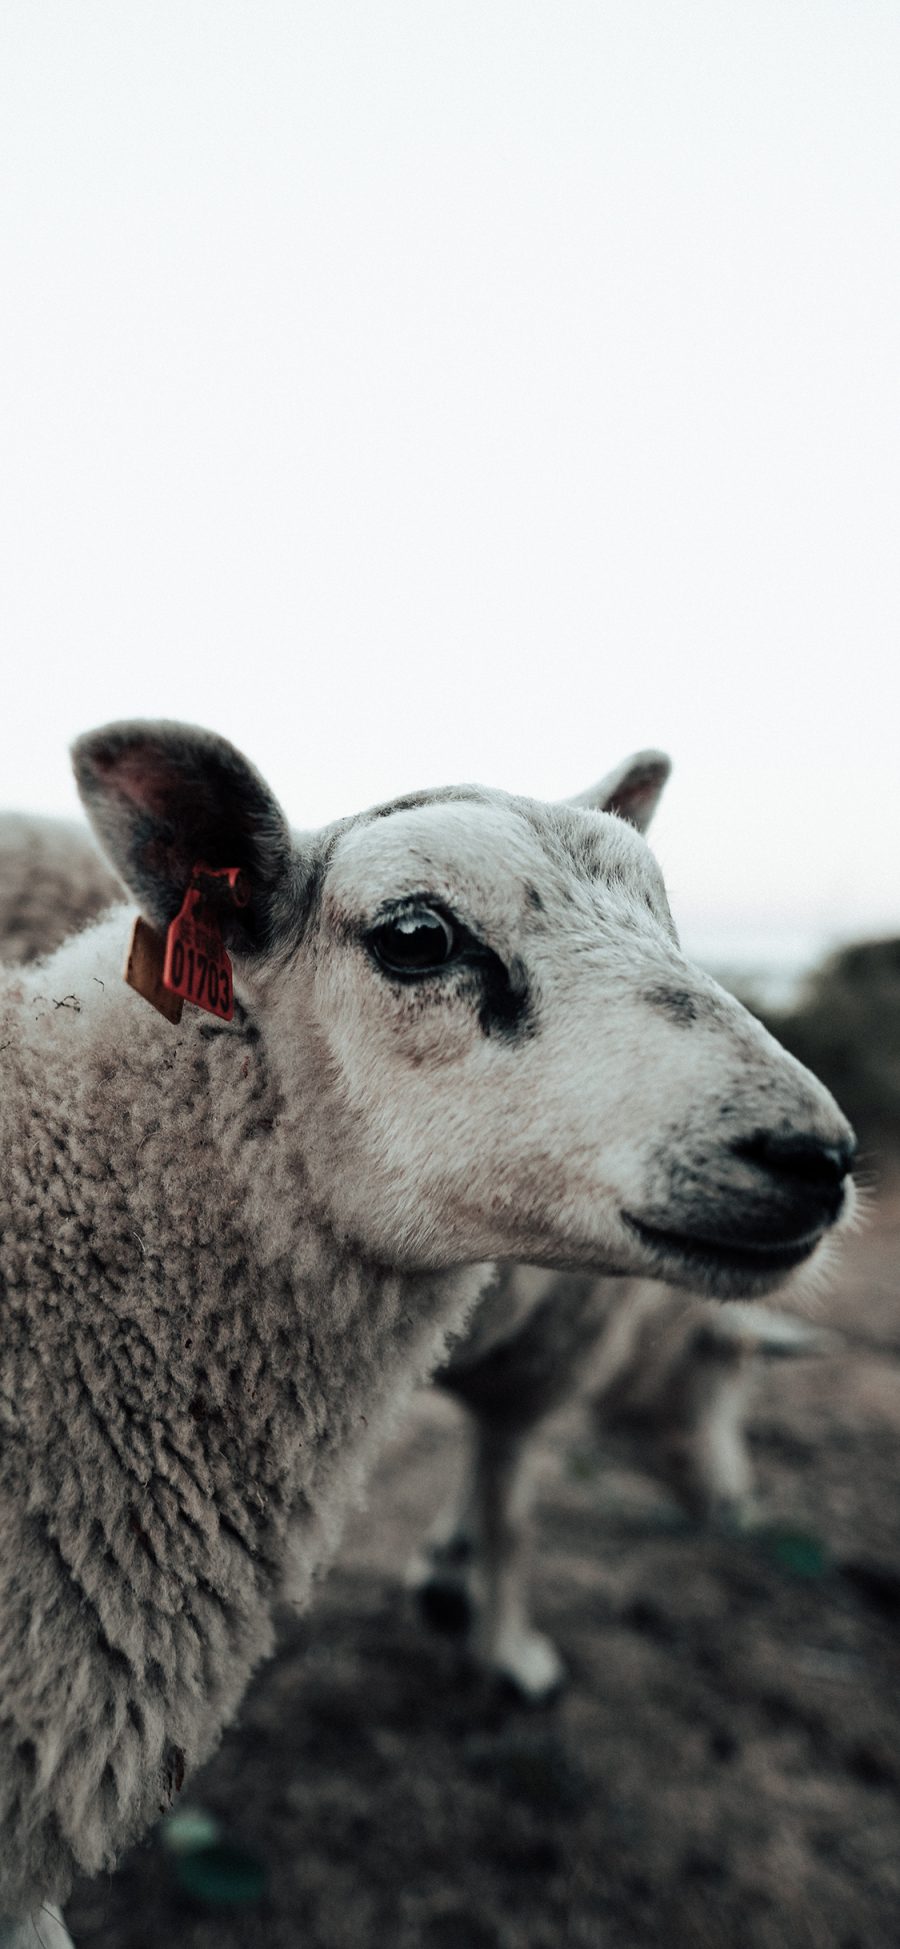 [2436×1125]羔羊 食草动物 羊毛 苹果手机壁纸图片